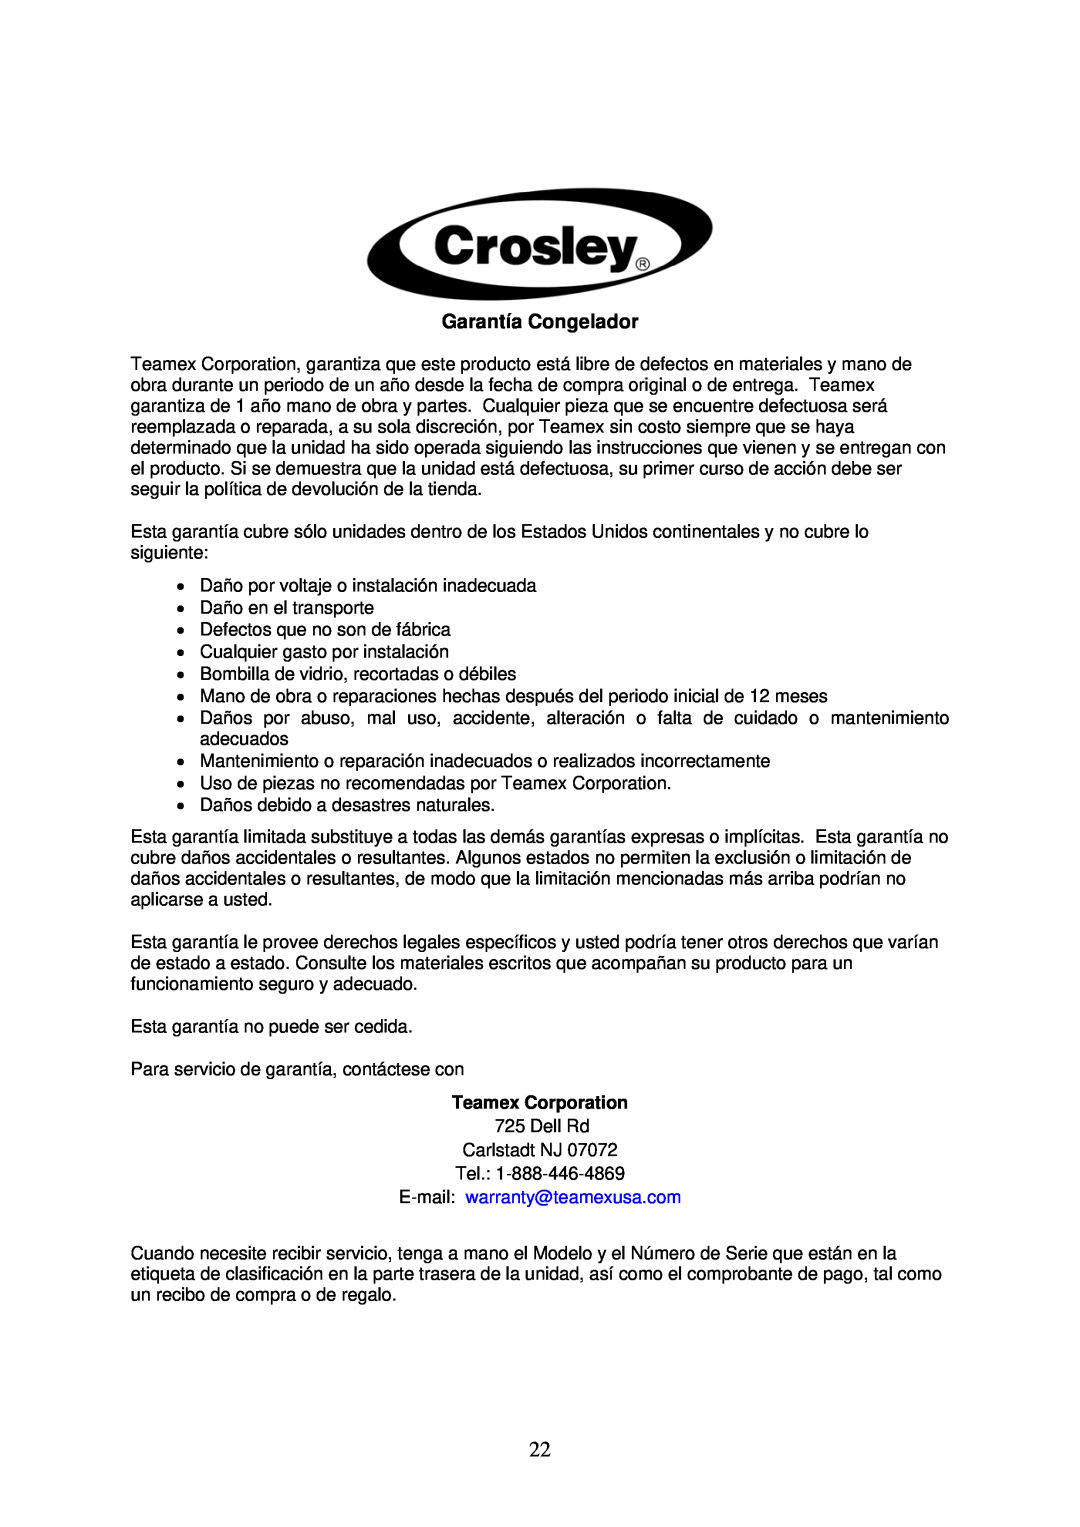 Crosley CCF73, CCF54, CCF35 instruction manual Garantía Congelador, Teamex Corporation 